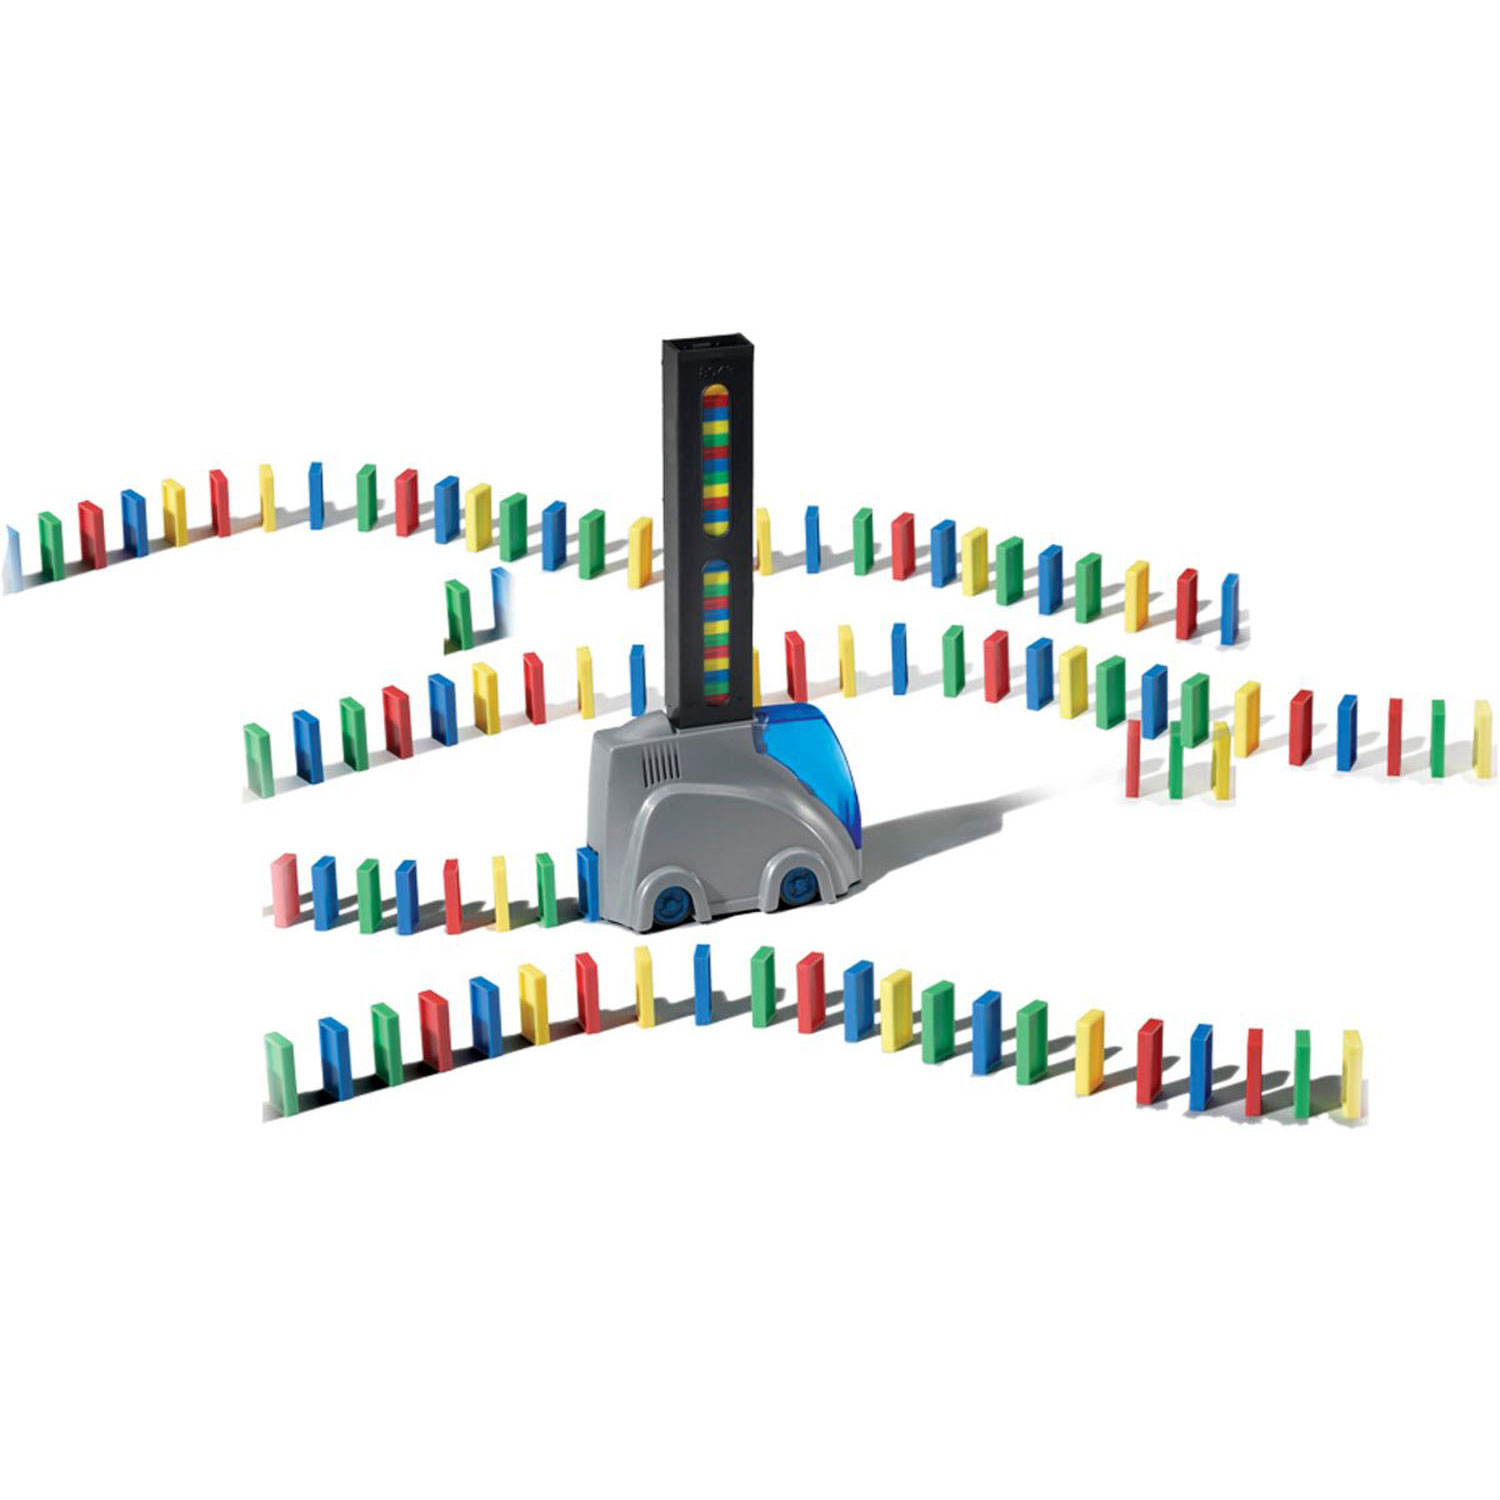 Promo Goliath le domino track creator + 400 dominos + recharge 200 dominos  chez Stokomani